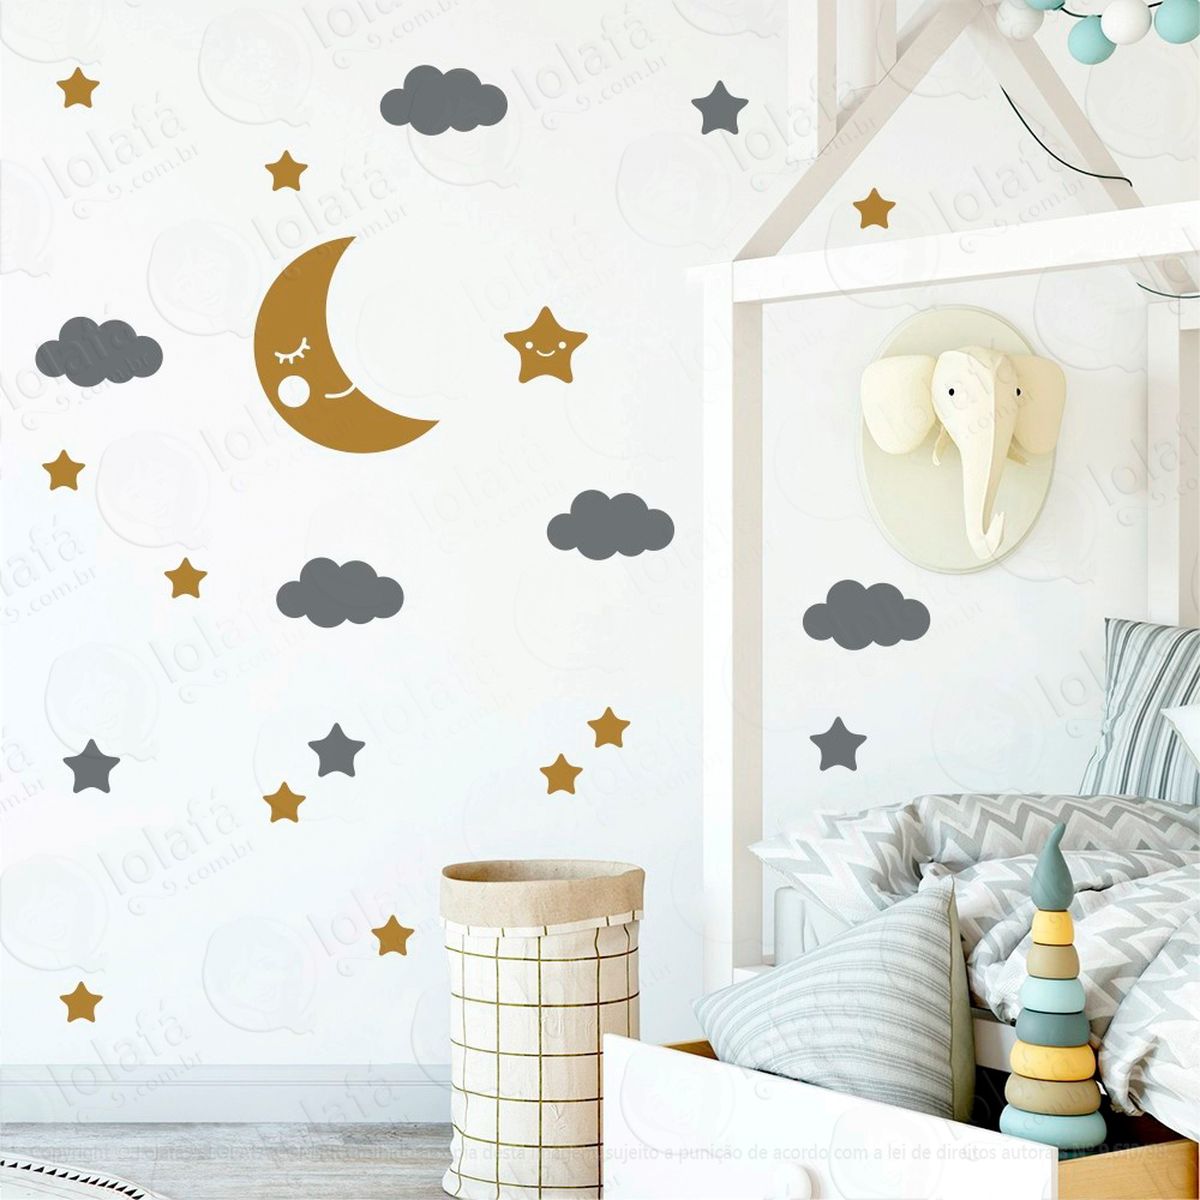 adesivos lua nuvens e estrelas 62 peças adesivos para quarto de bebê infantil - mod:619